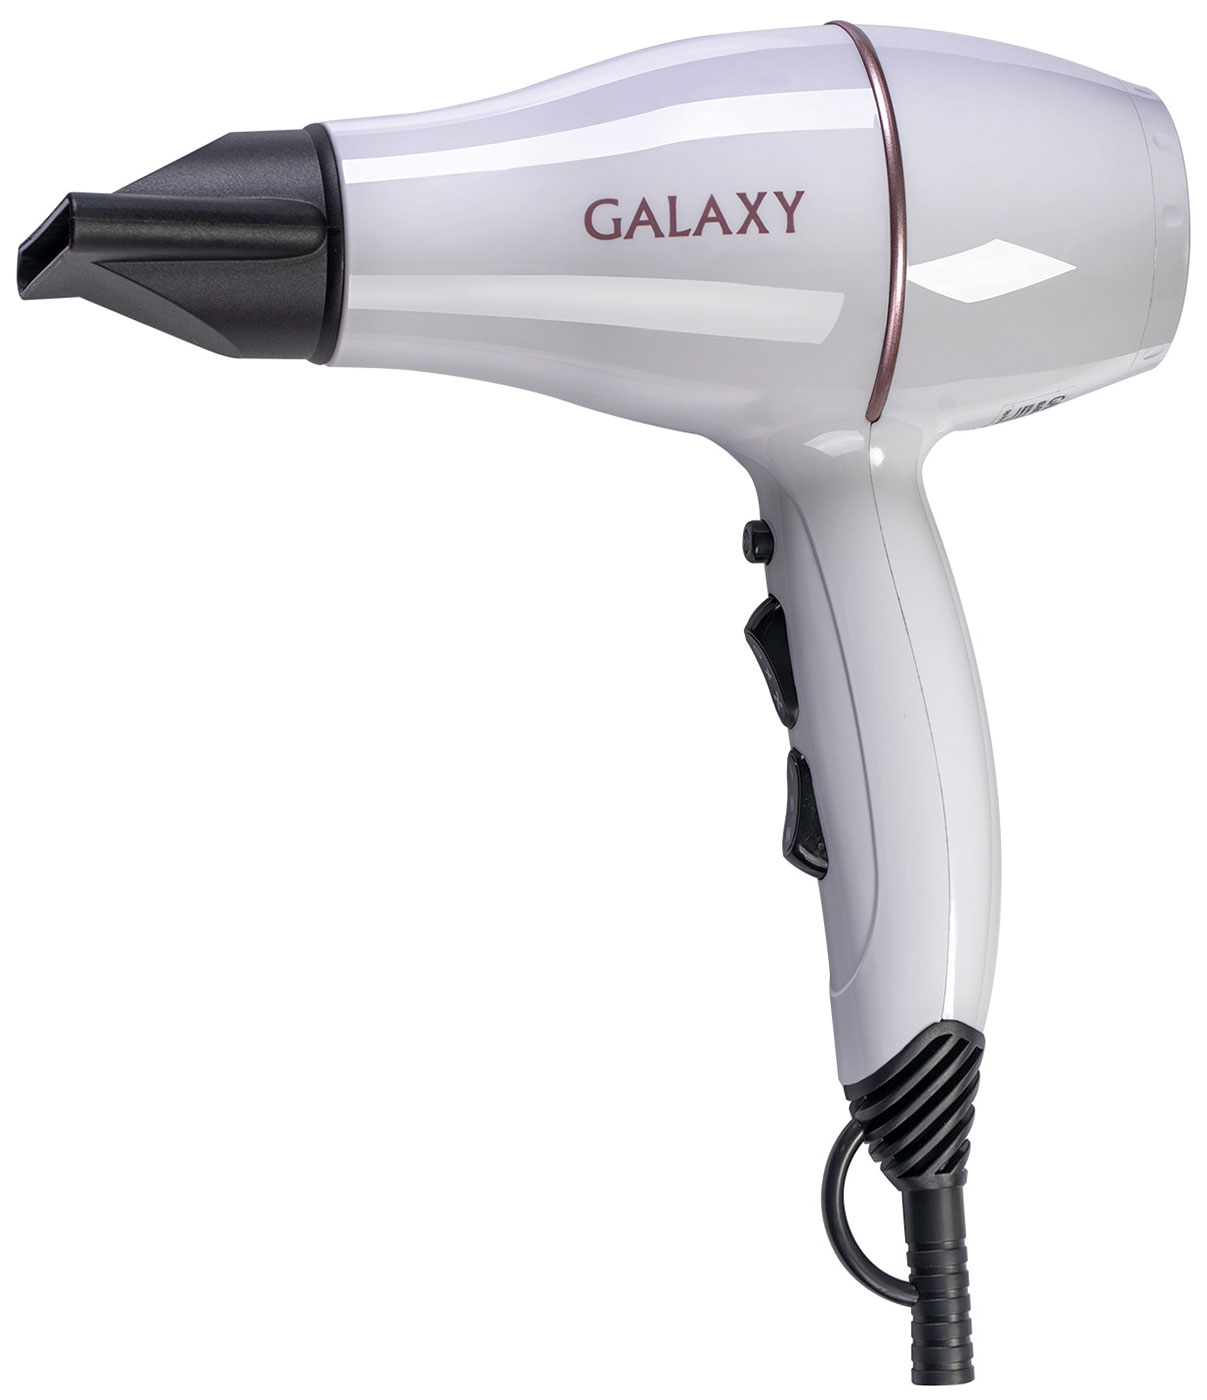 Фен Galaxy GL4302 фен bellissima фен для волос my pro hydra sonic цифровой ес мотор r9601 ионизация магнитные насадки